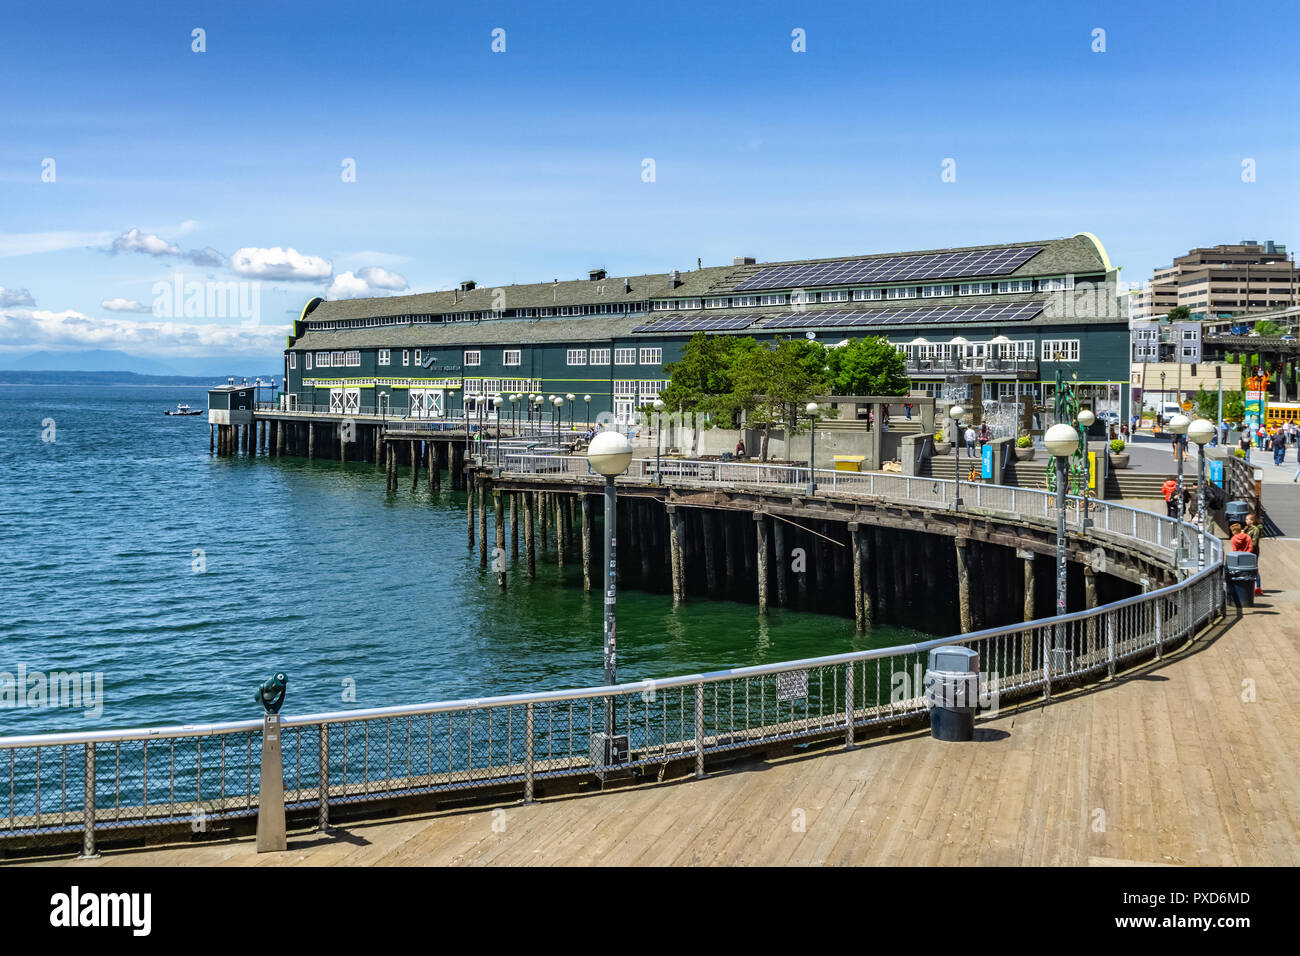 SEATTLE, Washington - 30. MAI 2018: Seattle Aquarium Gebäude am Wasser entlang der alaskischen Weise. Stockfoto